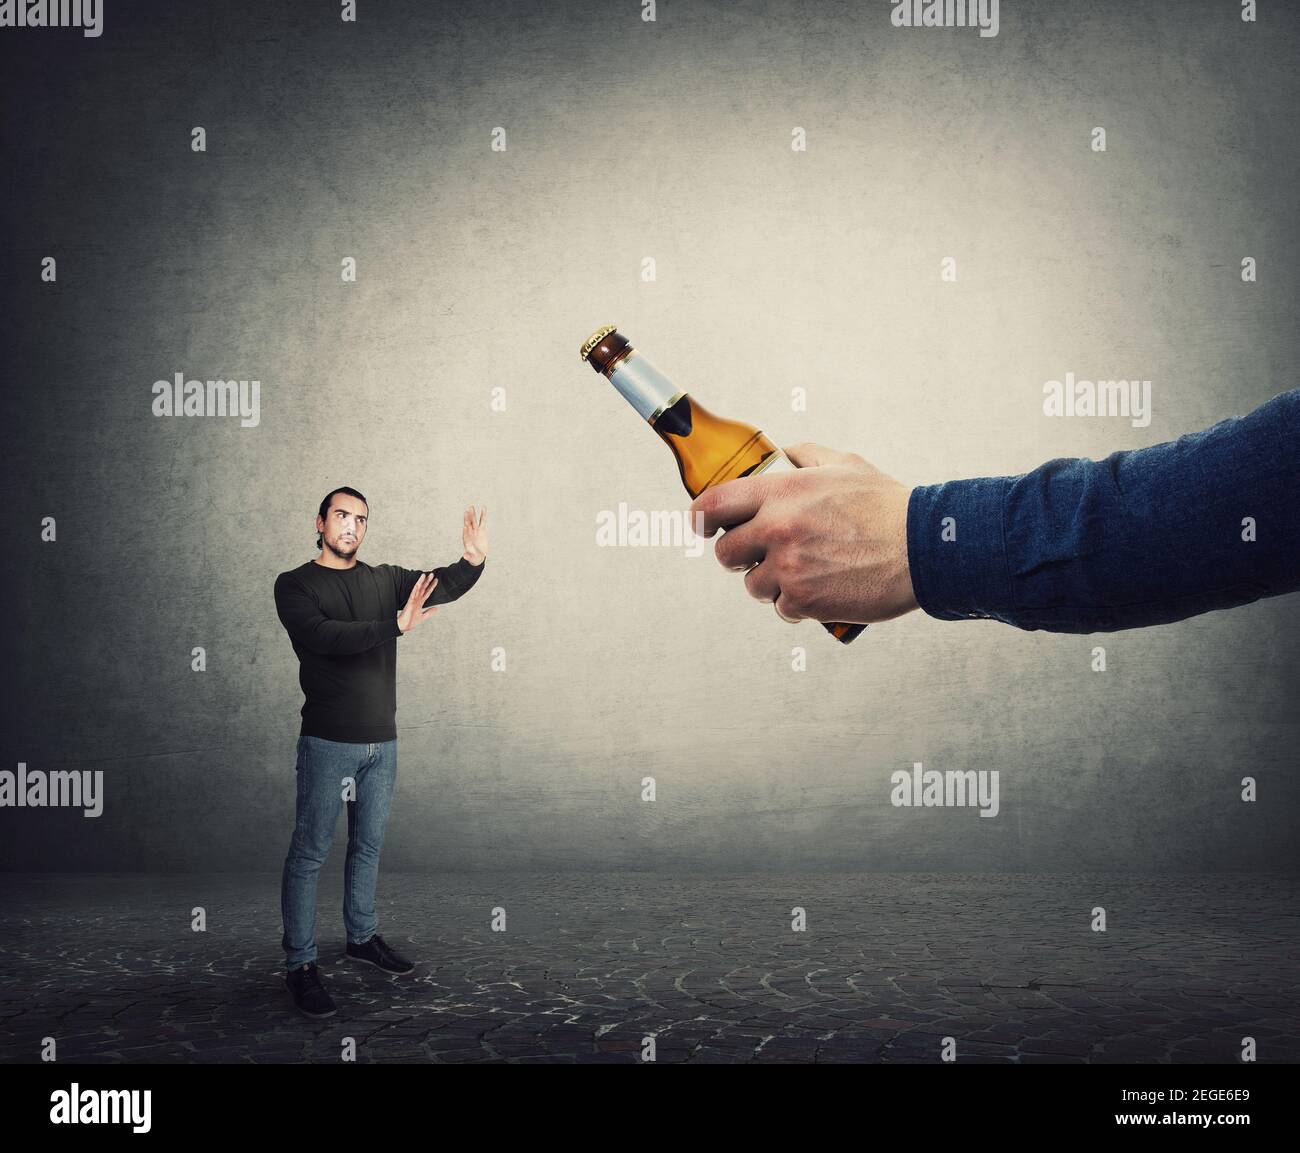 Smettere di consumare alcol concetto. L'uomo rifiuta di prendere una bottiglia di birra da una mano gigante, come metafora per vincere contro la dipendenza. Il ragazzo respinge bere alc Foto Stock